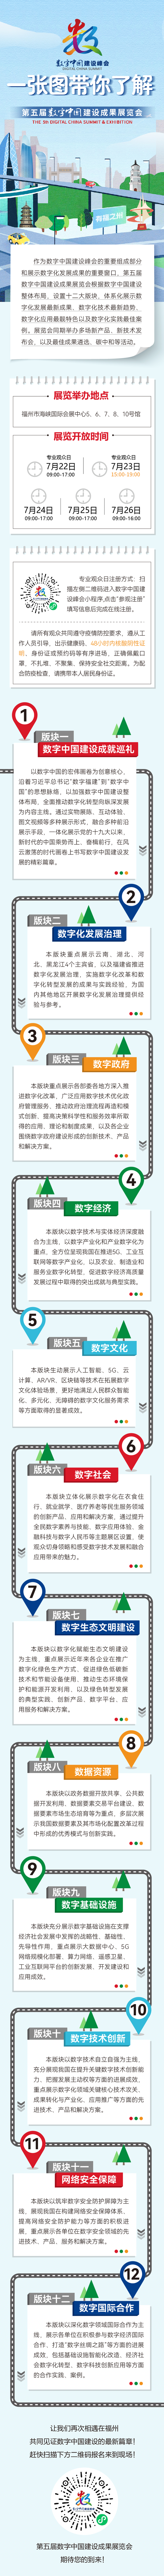 一张图带你读懂第五届数字中国建设成果展览会